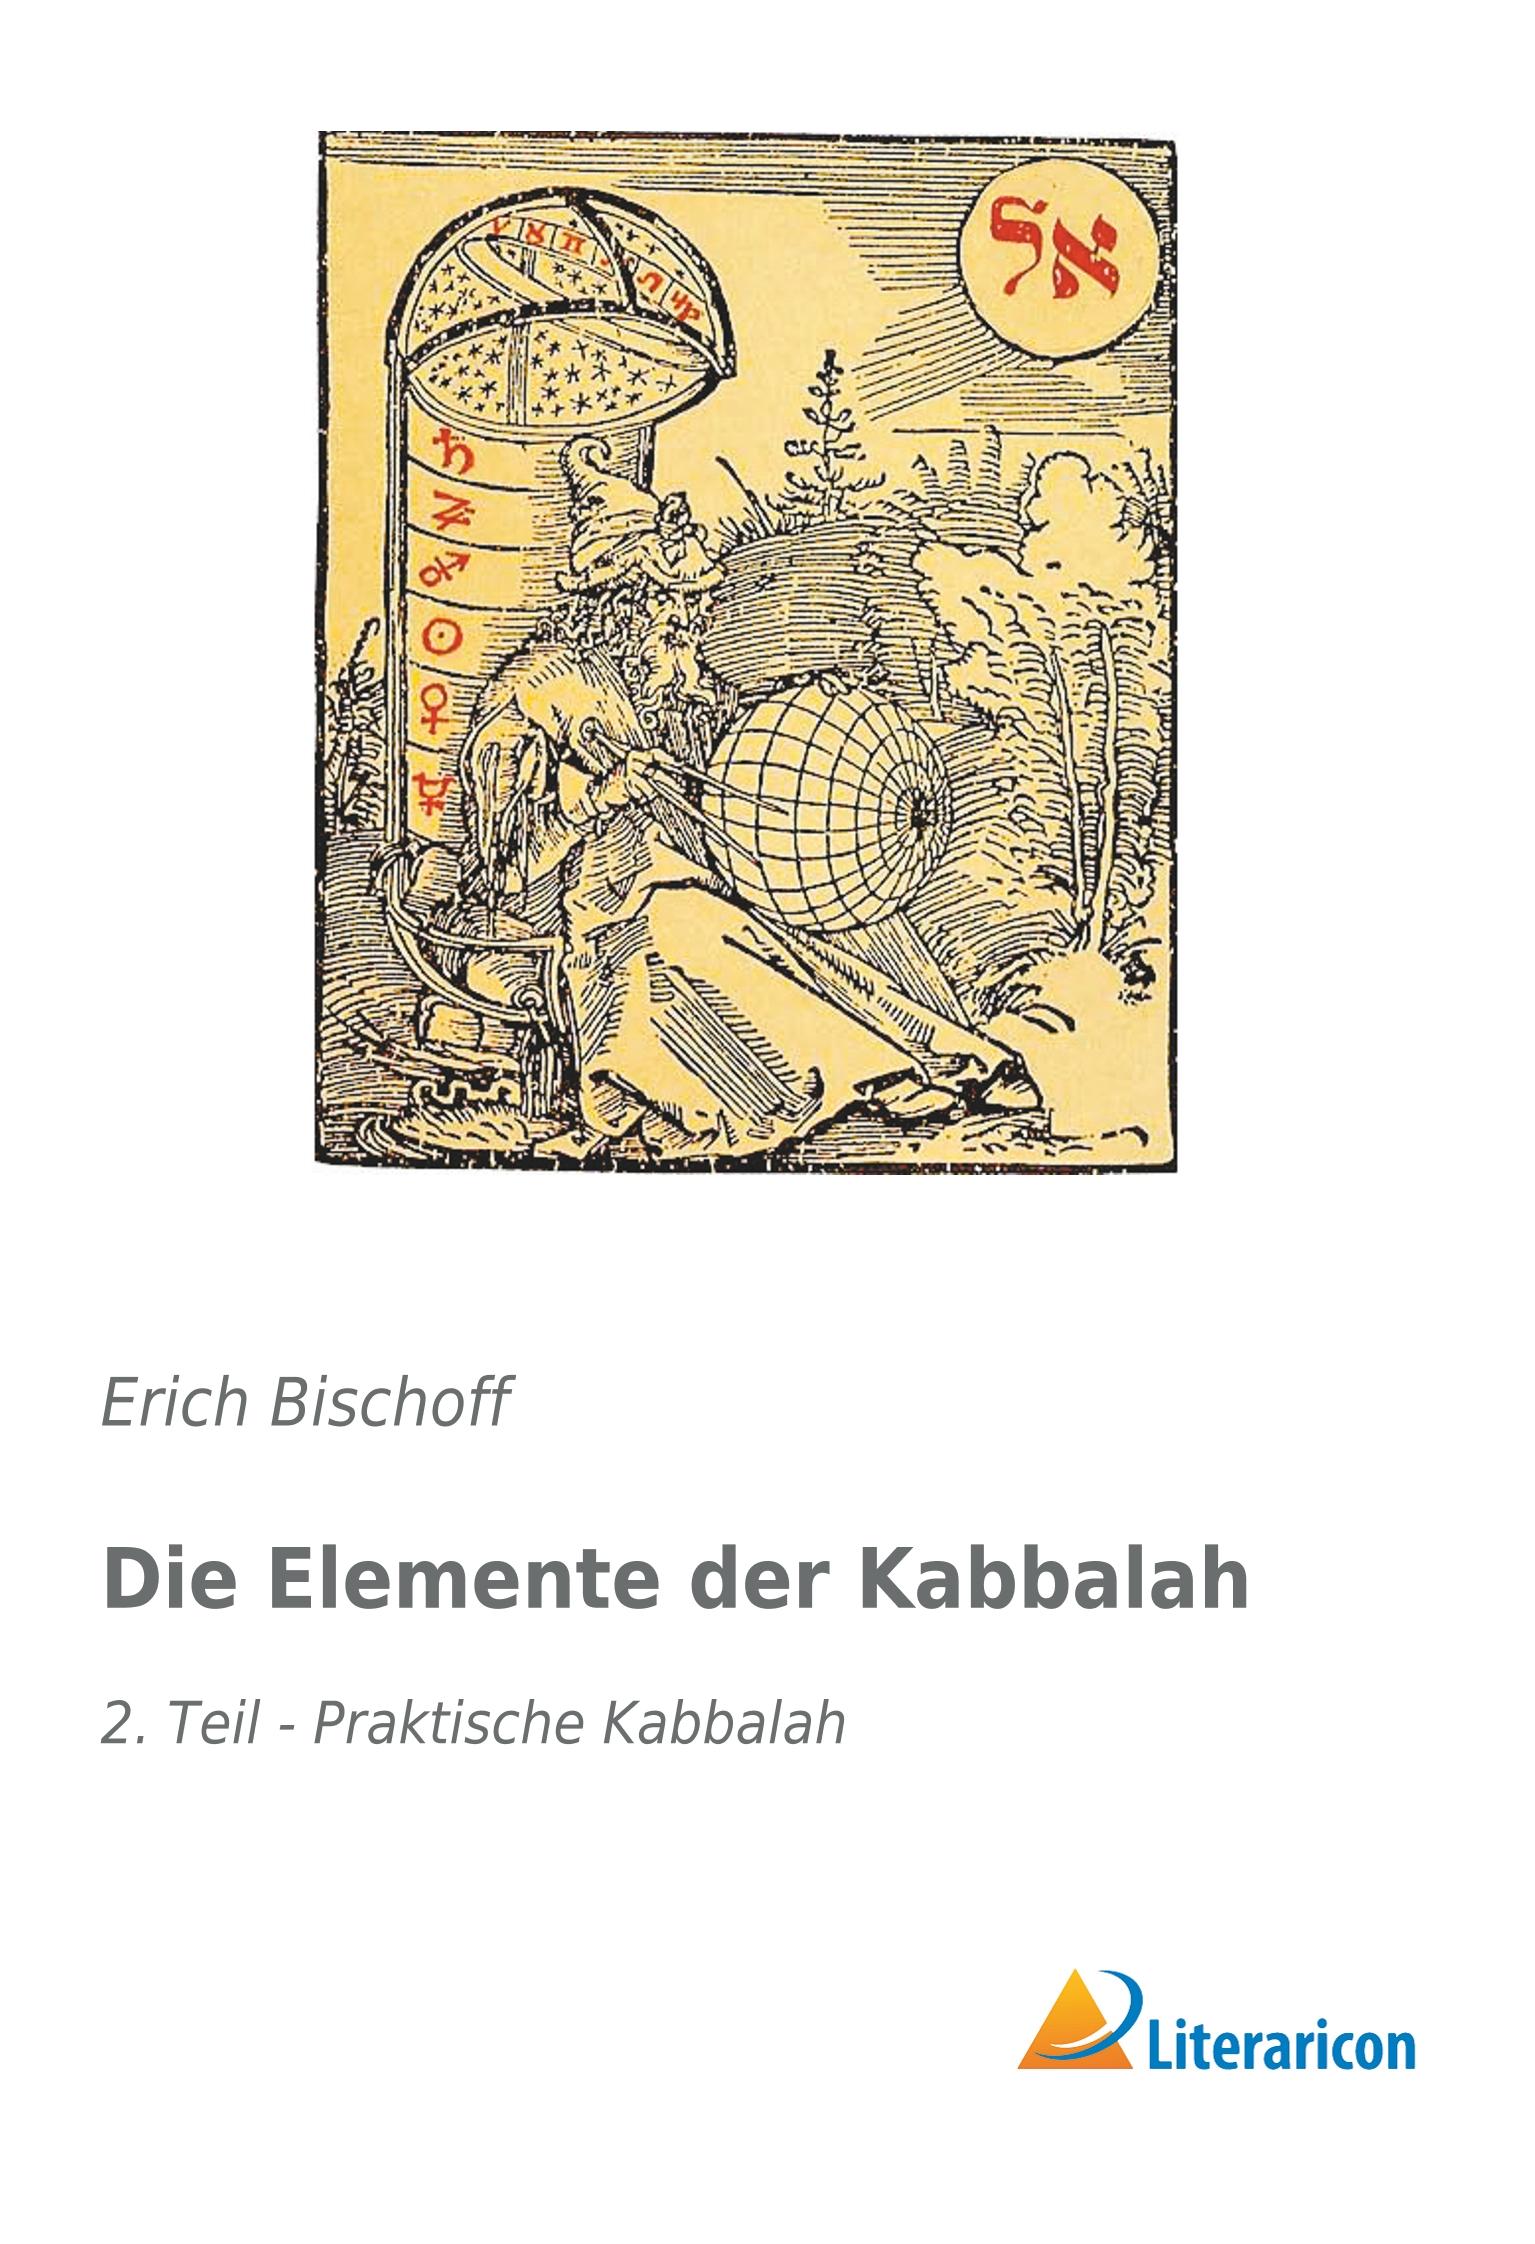 Die Elemente der Kabbalah / 2. Teil - Praktische Kabbalah / Erich Bischoff / Taschenbuch / Paperback / 240 S. / Deutsch / 2019 / Literaricon Verlag / EAN 9783959135979 - Bischoff, Erich